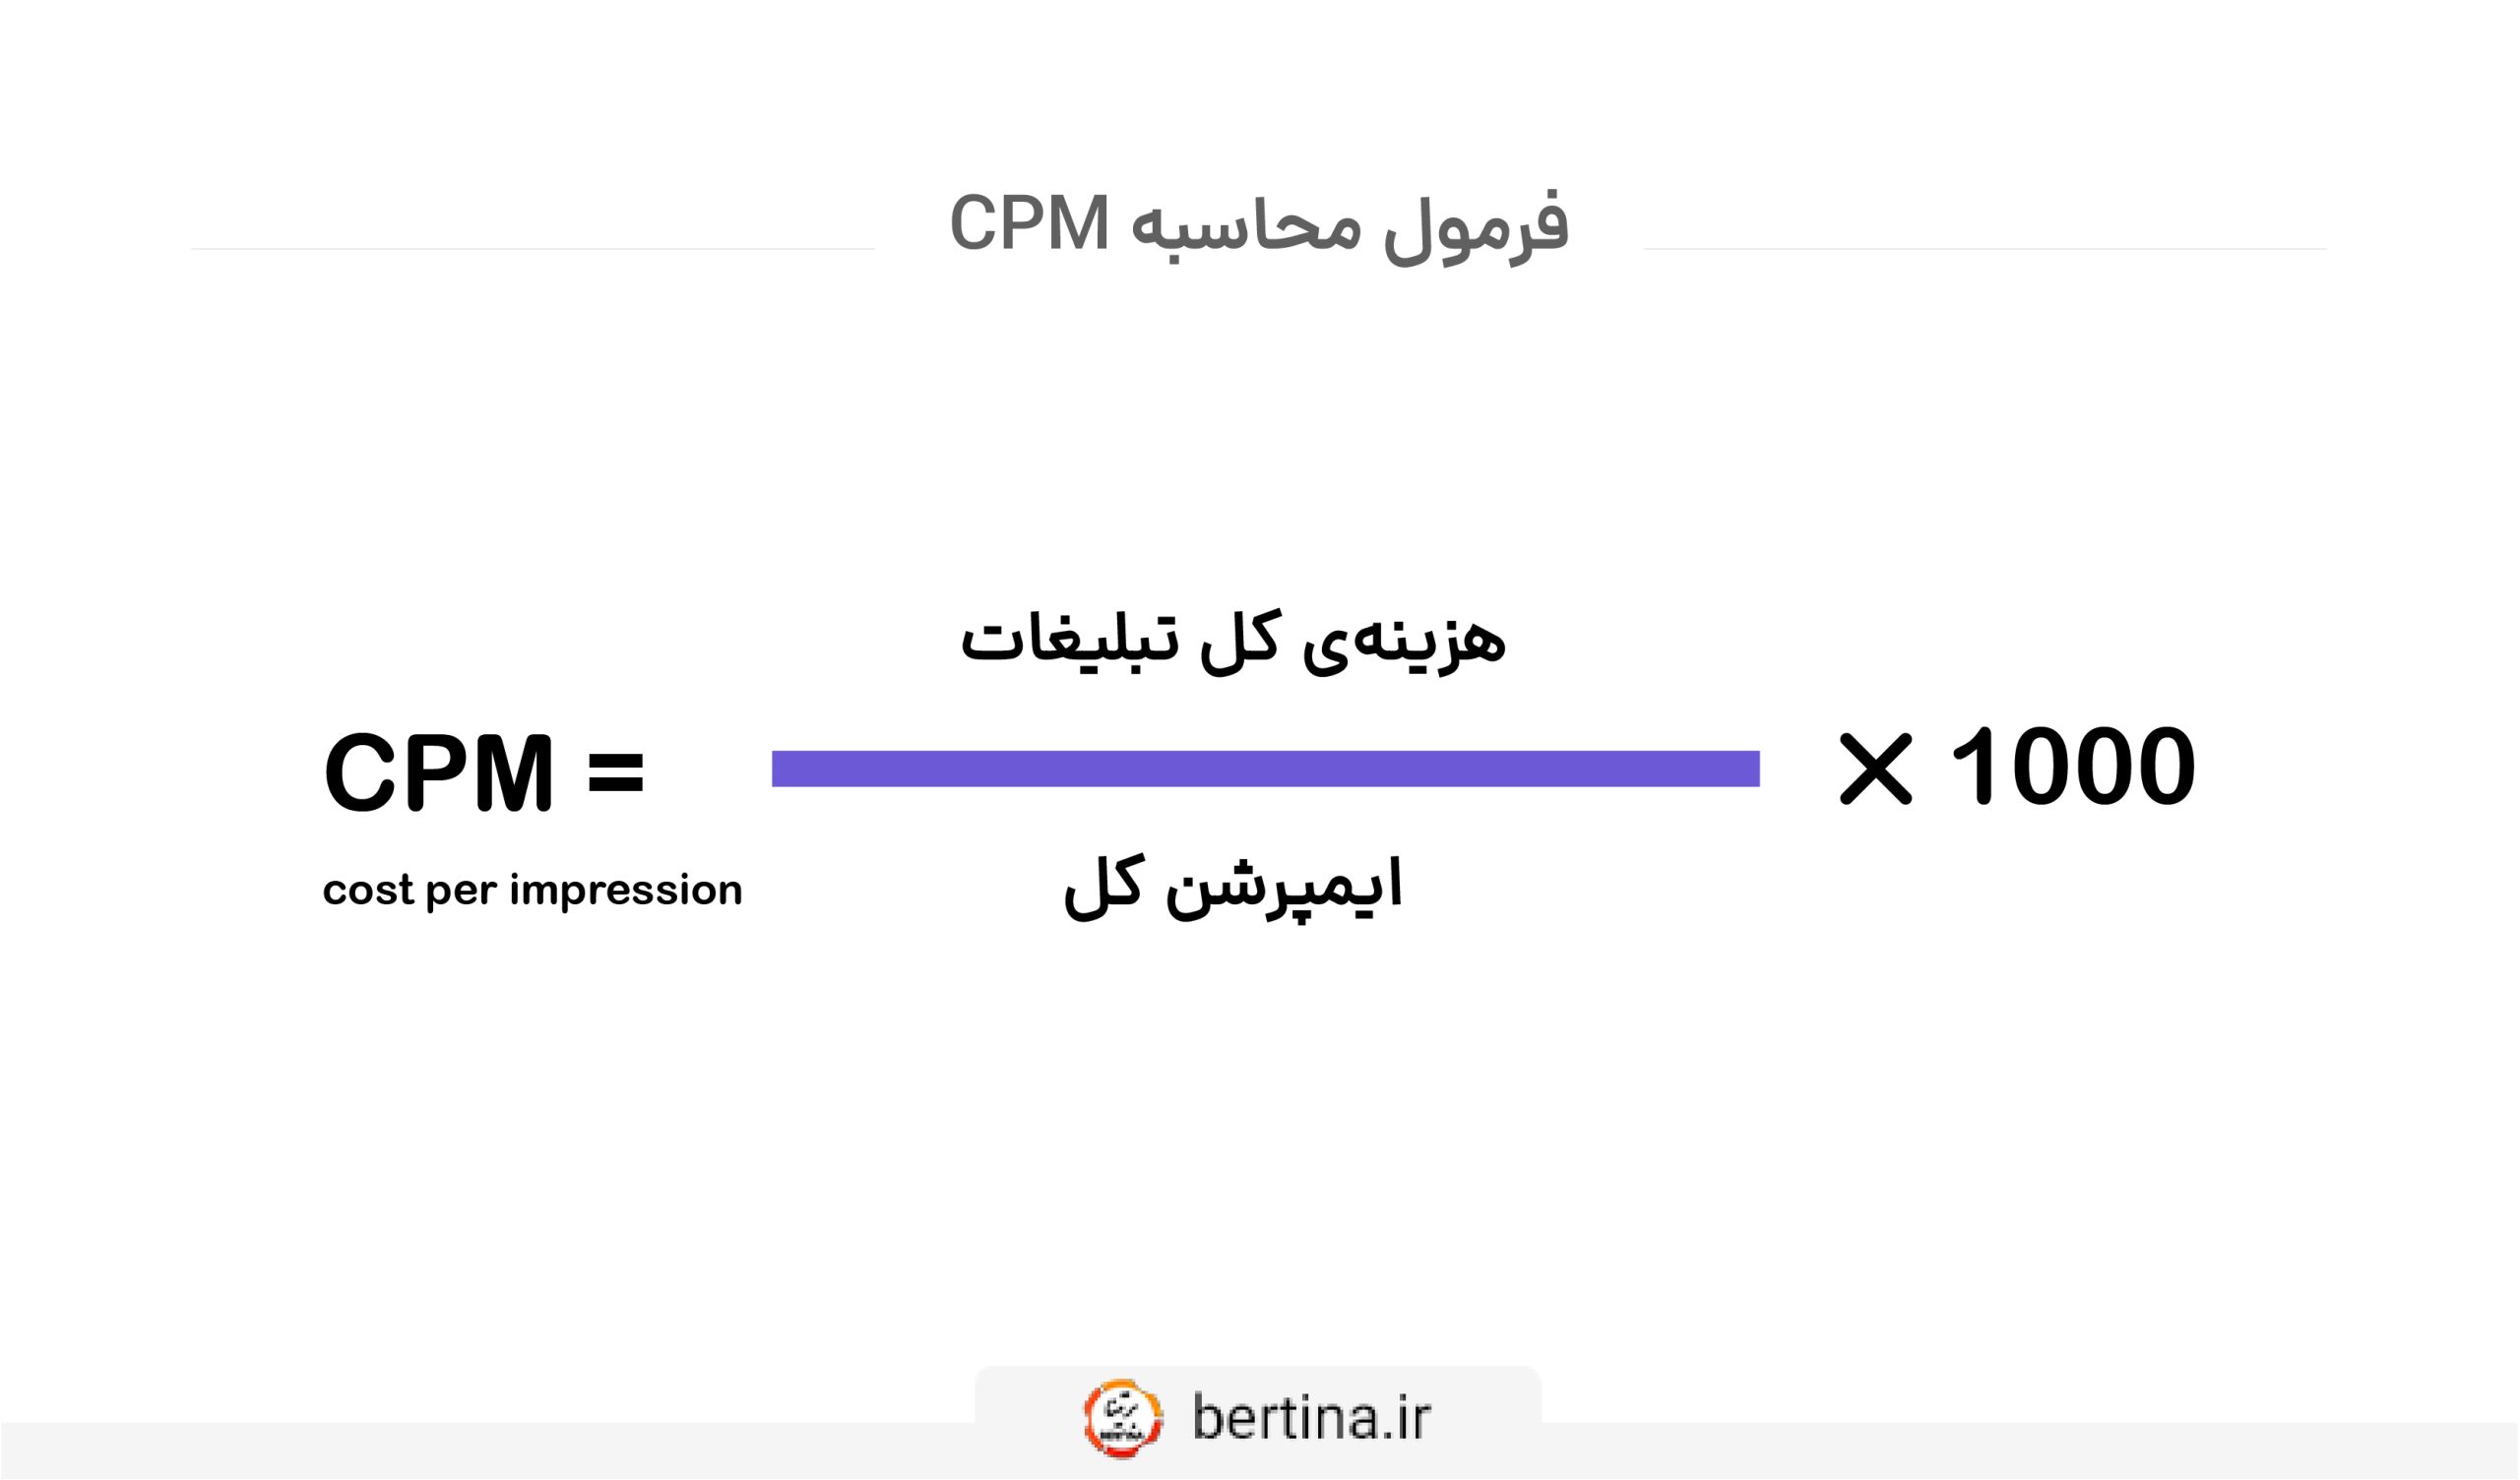 فرمول محاسبه CPM در مارکتینگ